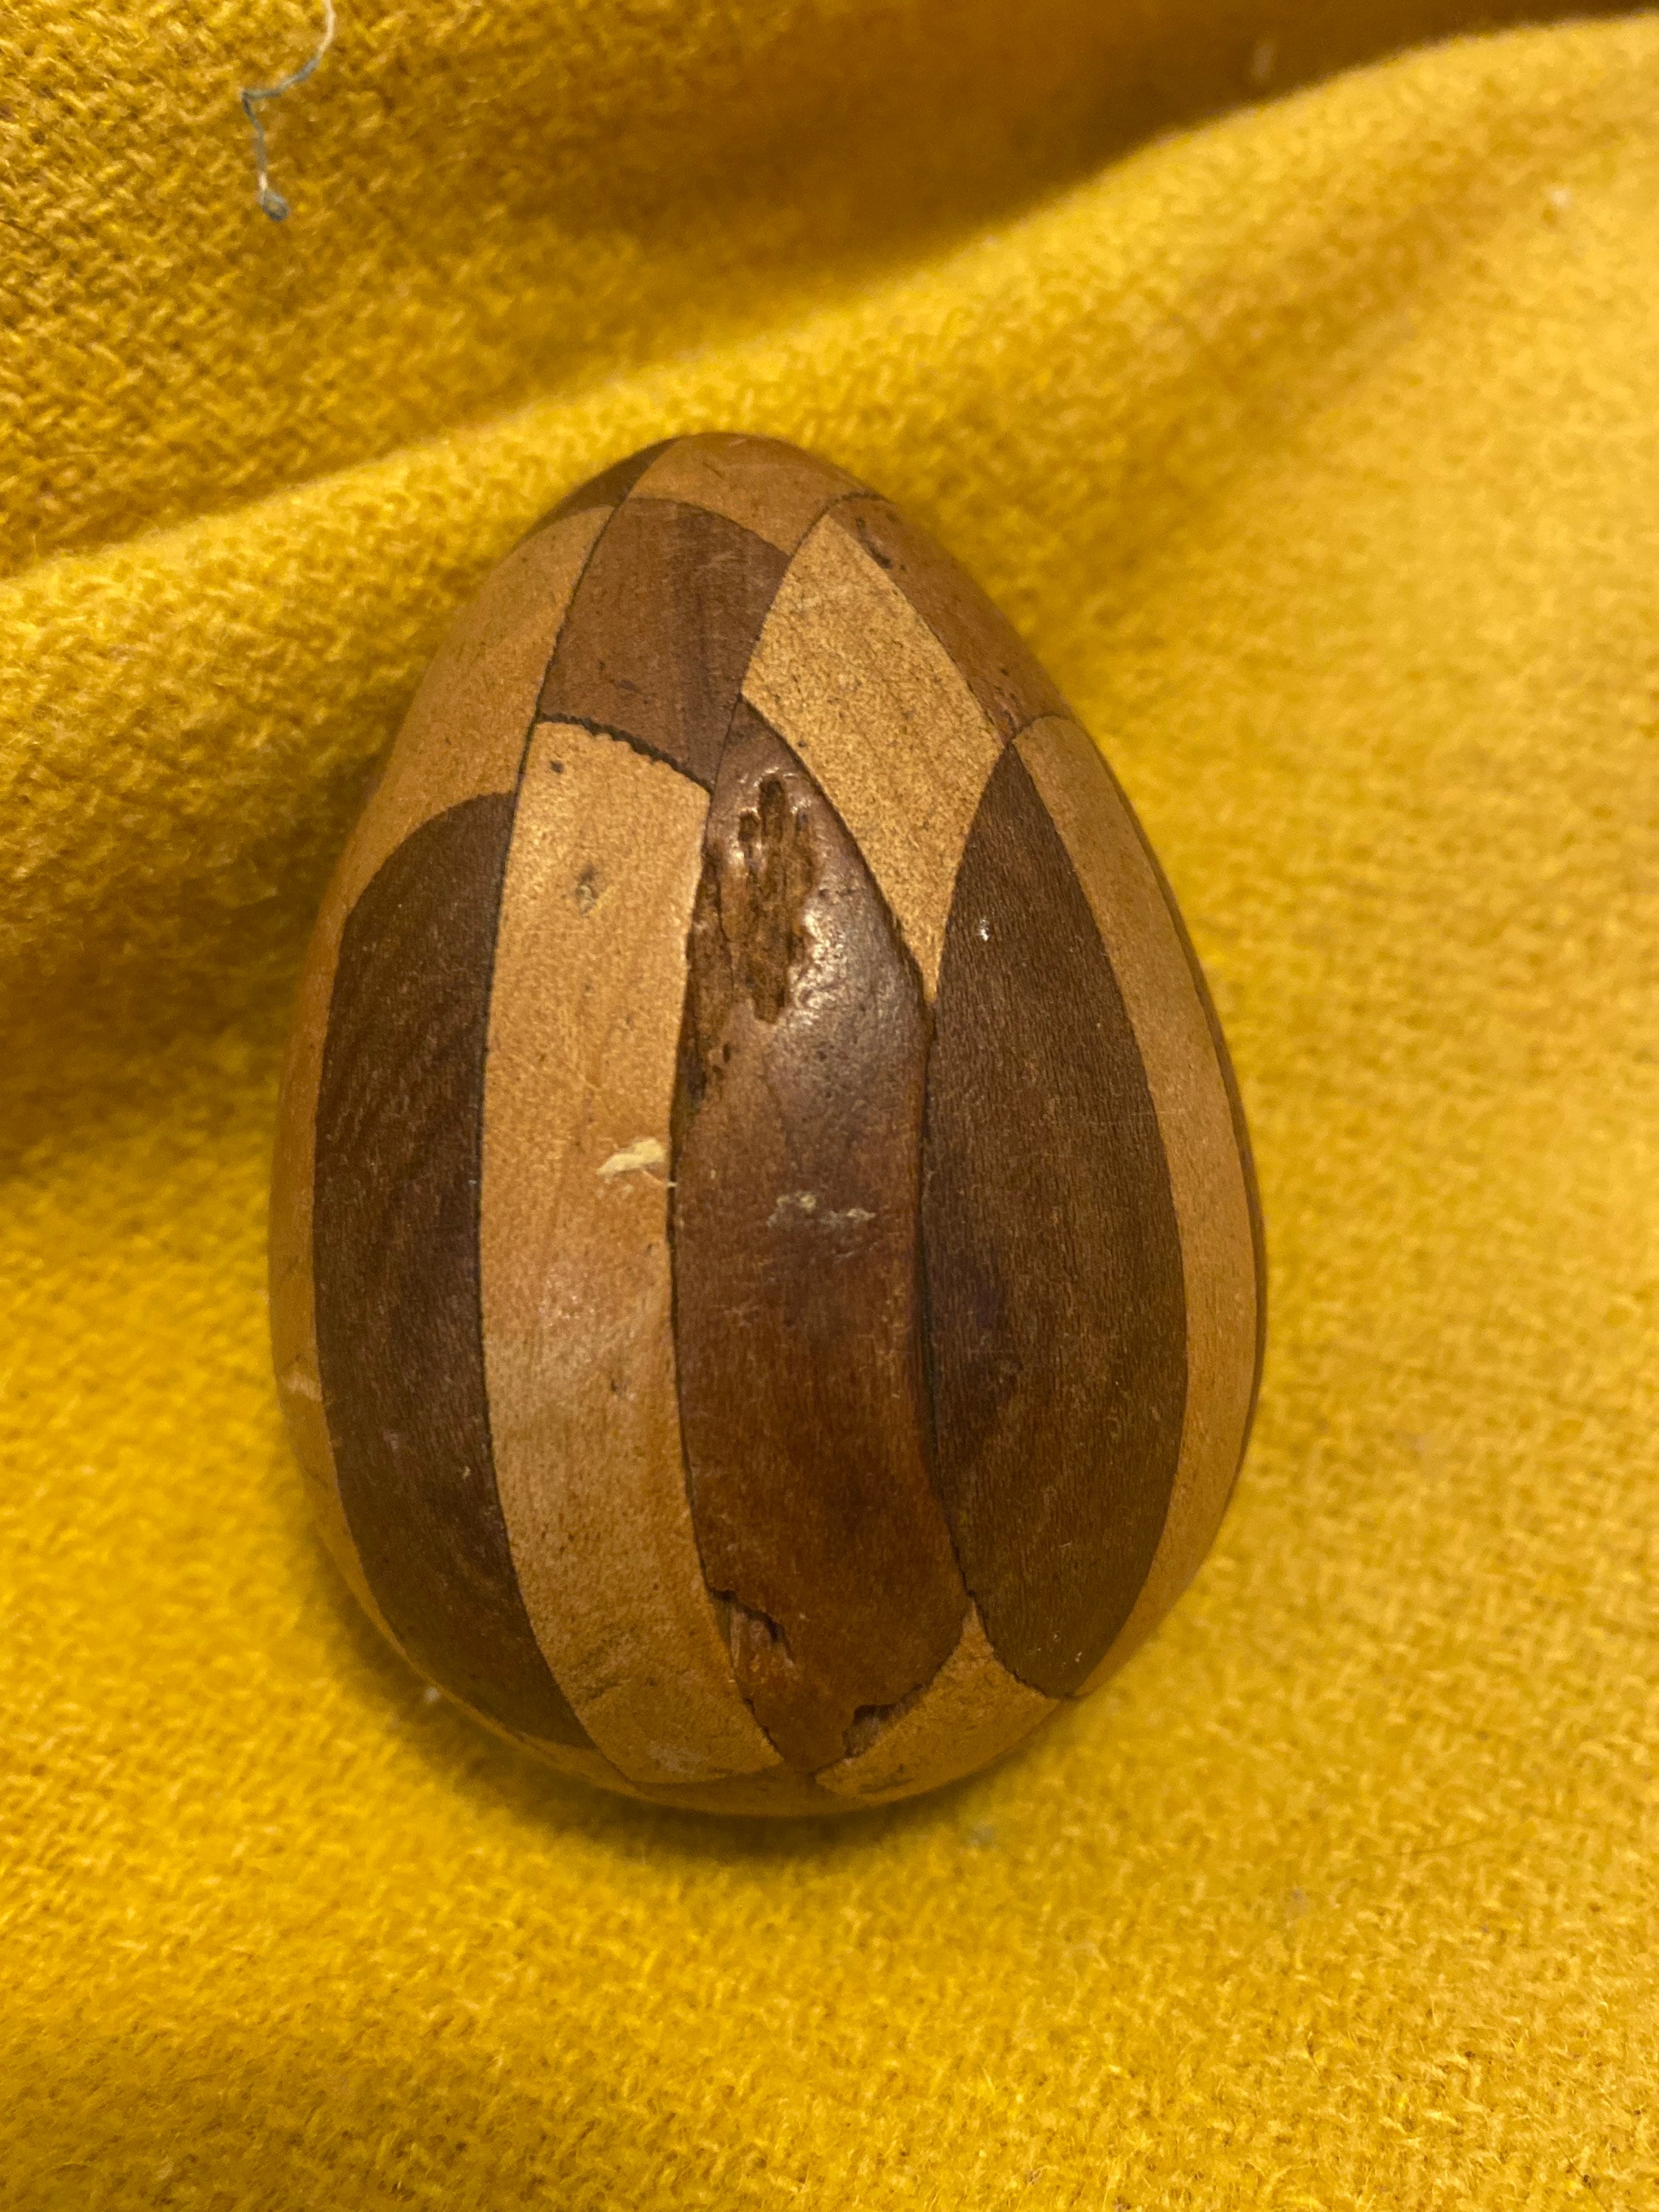 Stocking darning egg; 18005